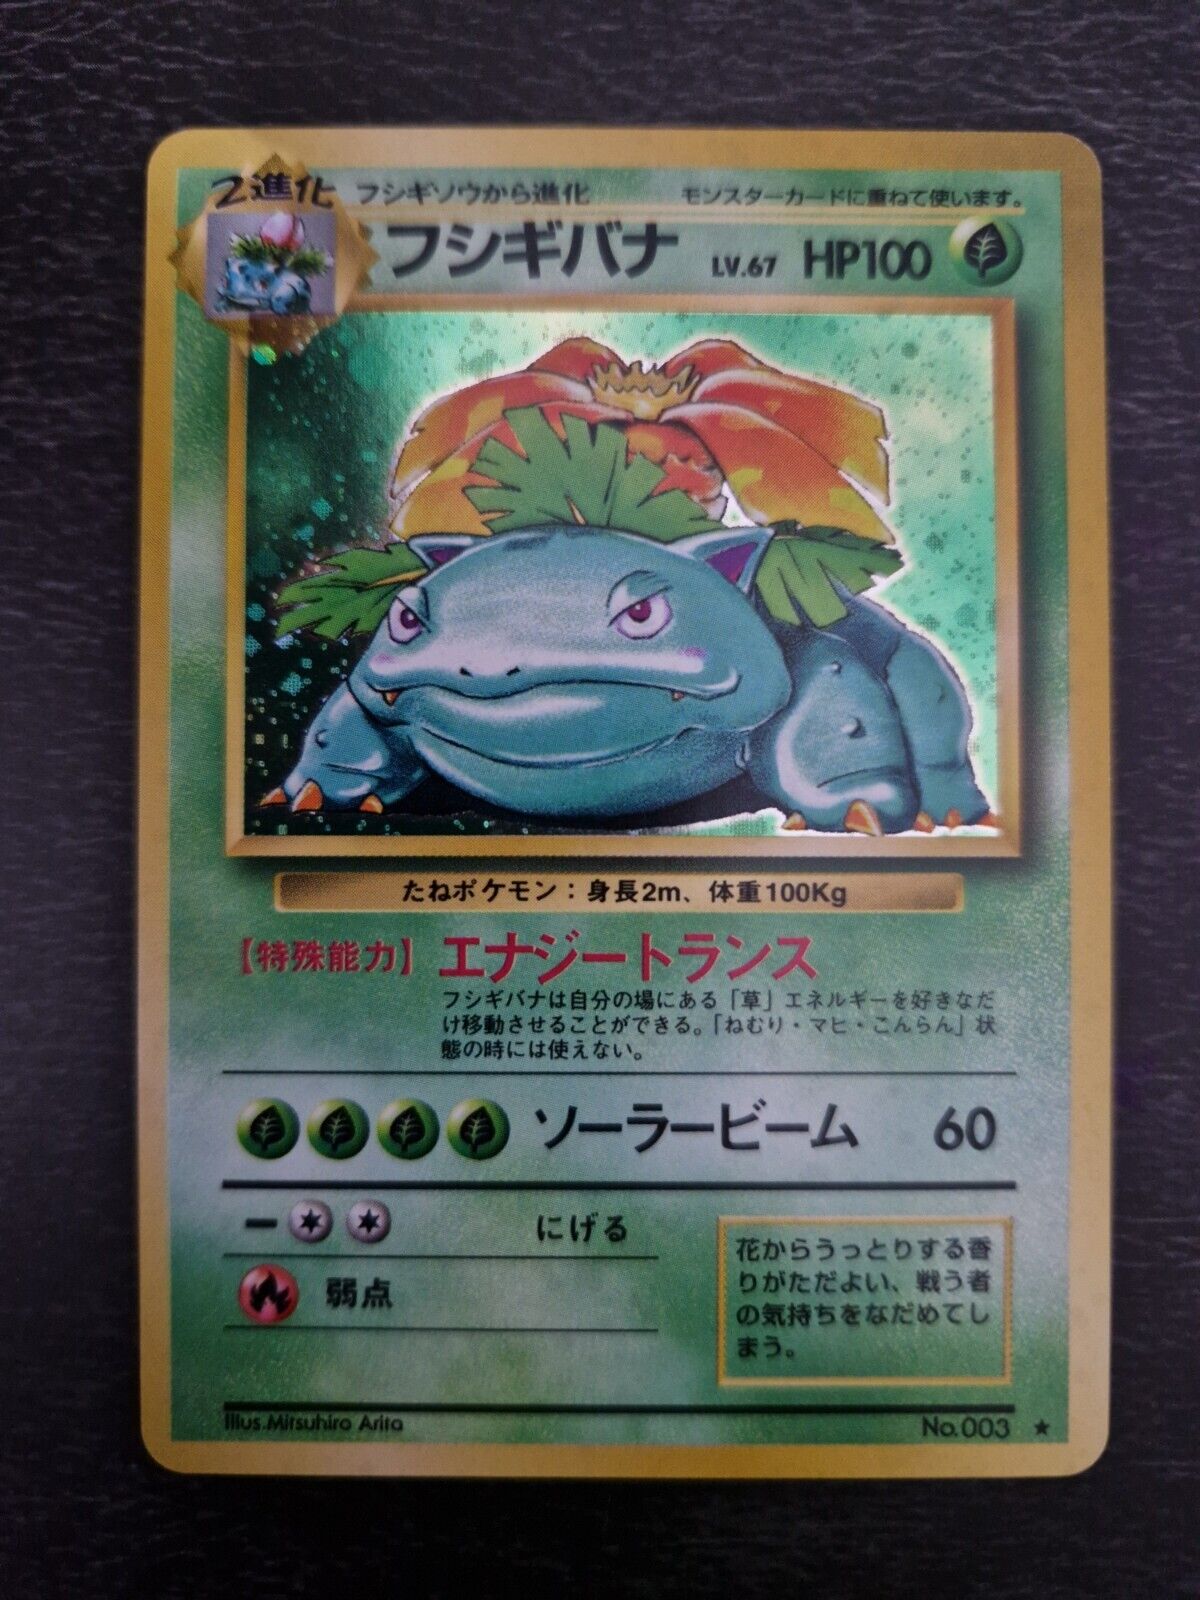 VENUSAUR BASE SET #003 JAPANESE 1996 Pokemon Card Holo Expansion Pack